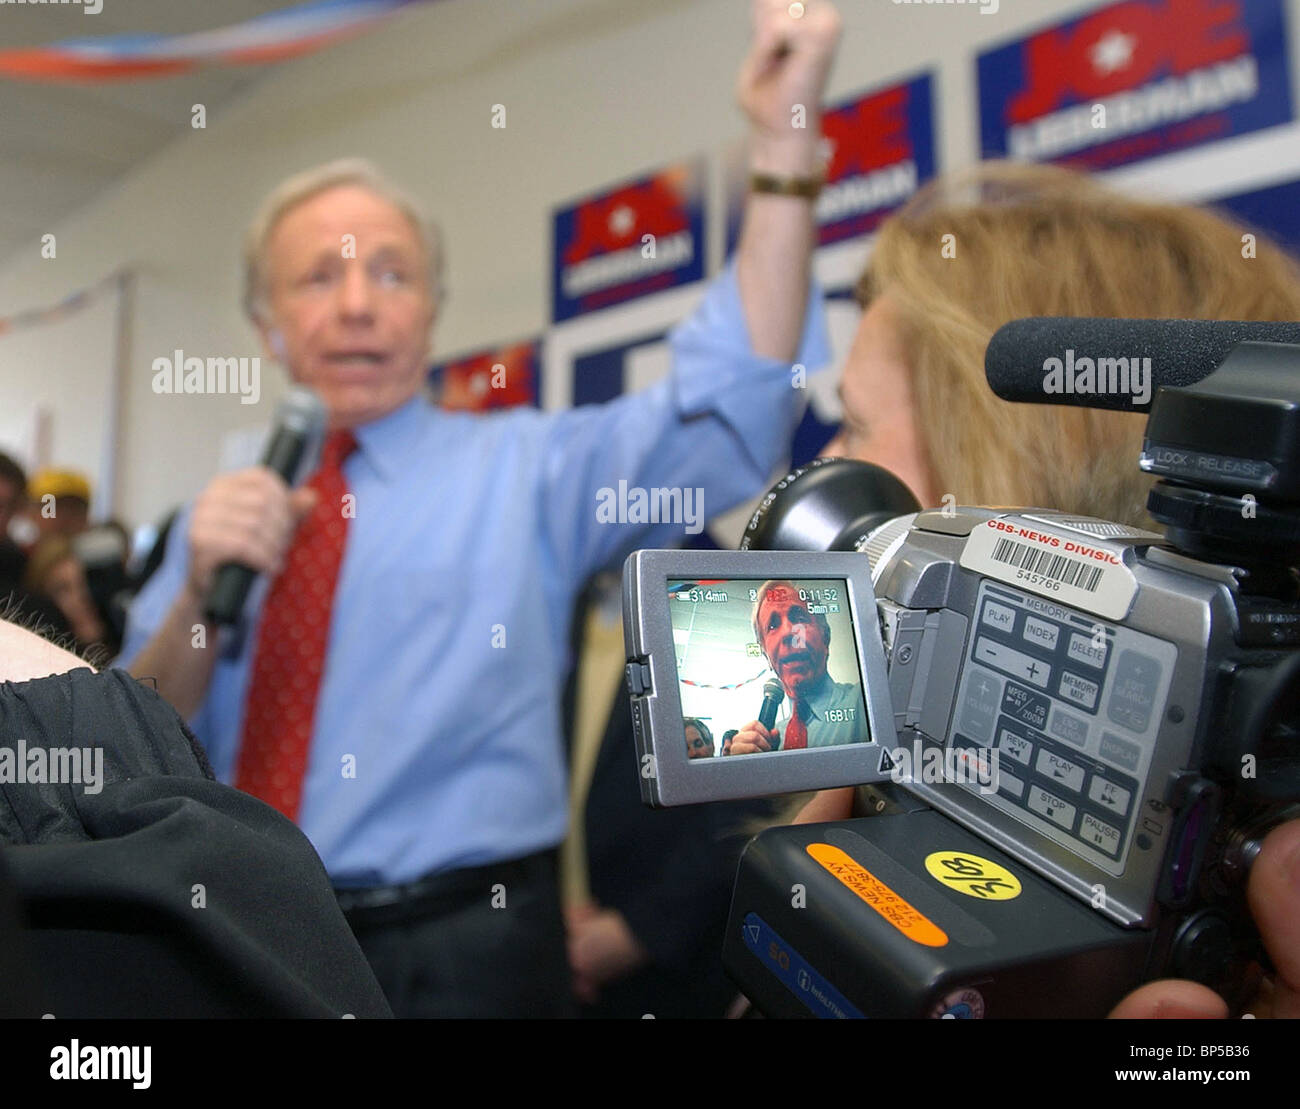 Senator Joe Lieberman aus Connecticut in TV-Monitor gezeigt, wie er für das Präsidentenamt im Jahr 2004 während der Vorwahlen in New Hampshire kandidierte Stockfoto